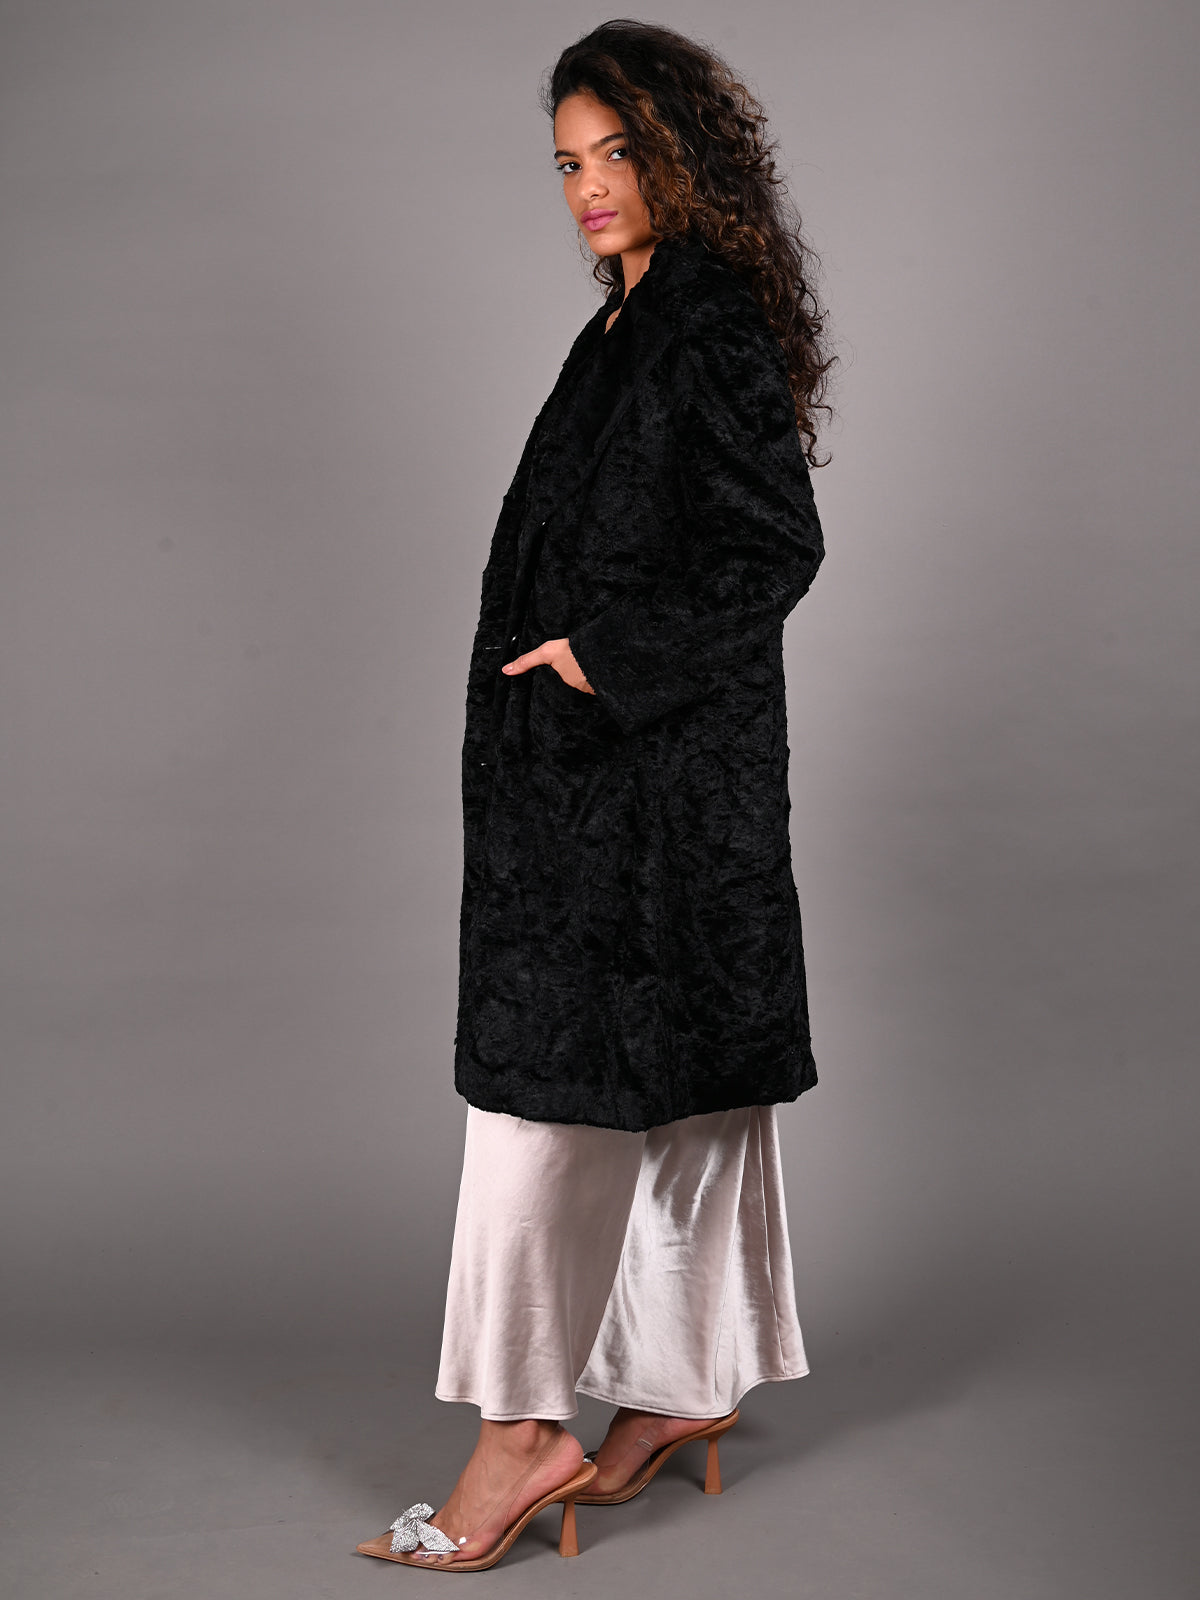 Odette Black Fur Textured Woollen Overcoat for Women